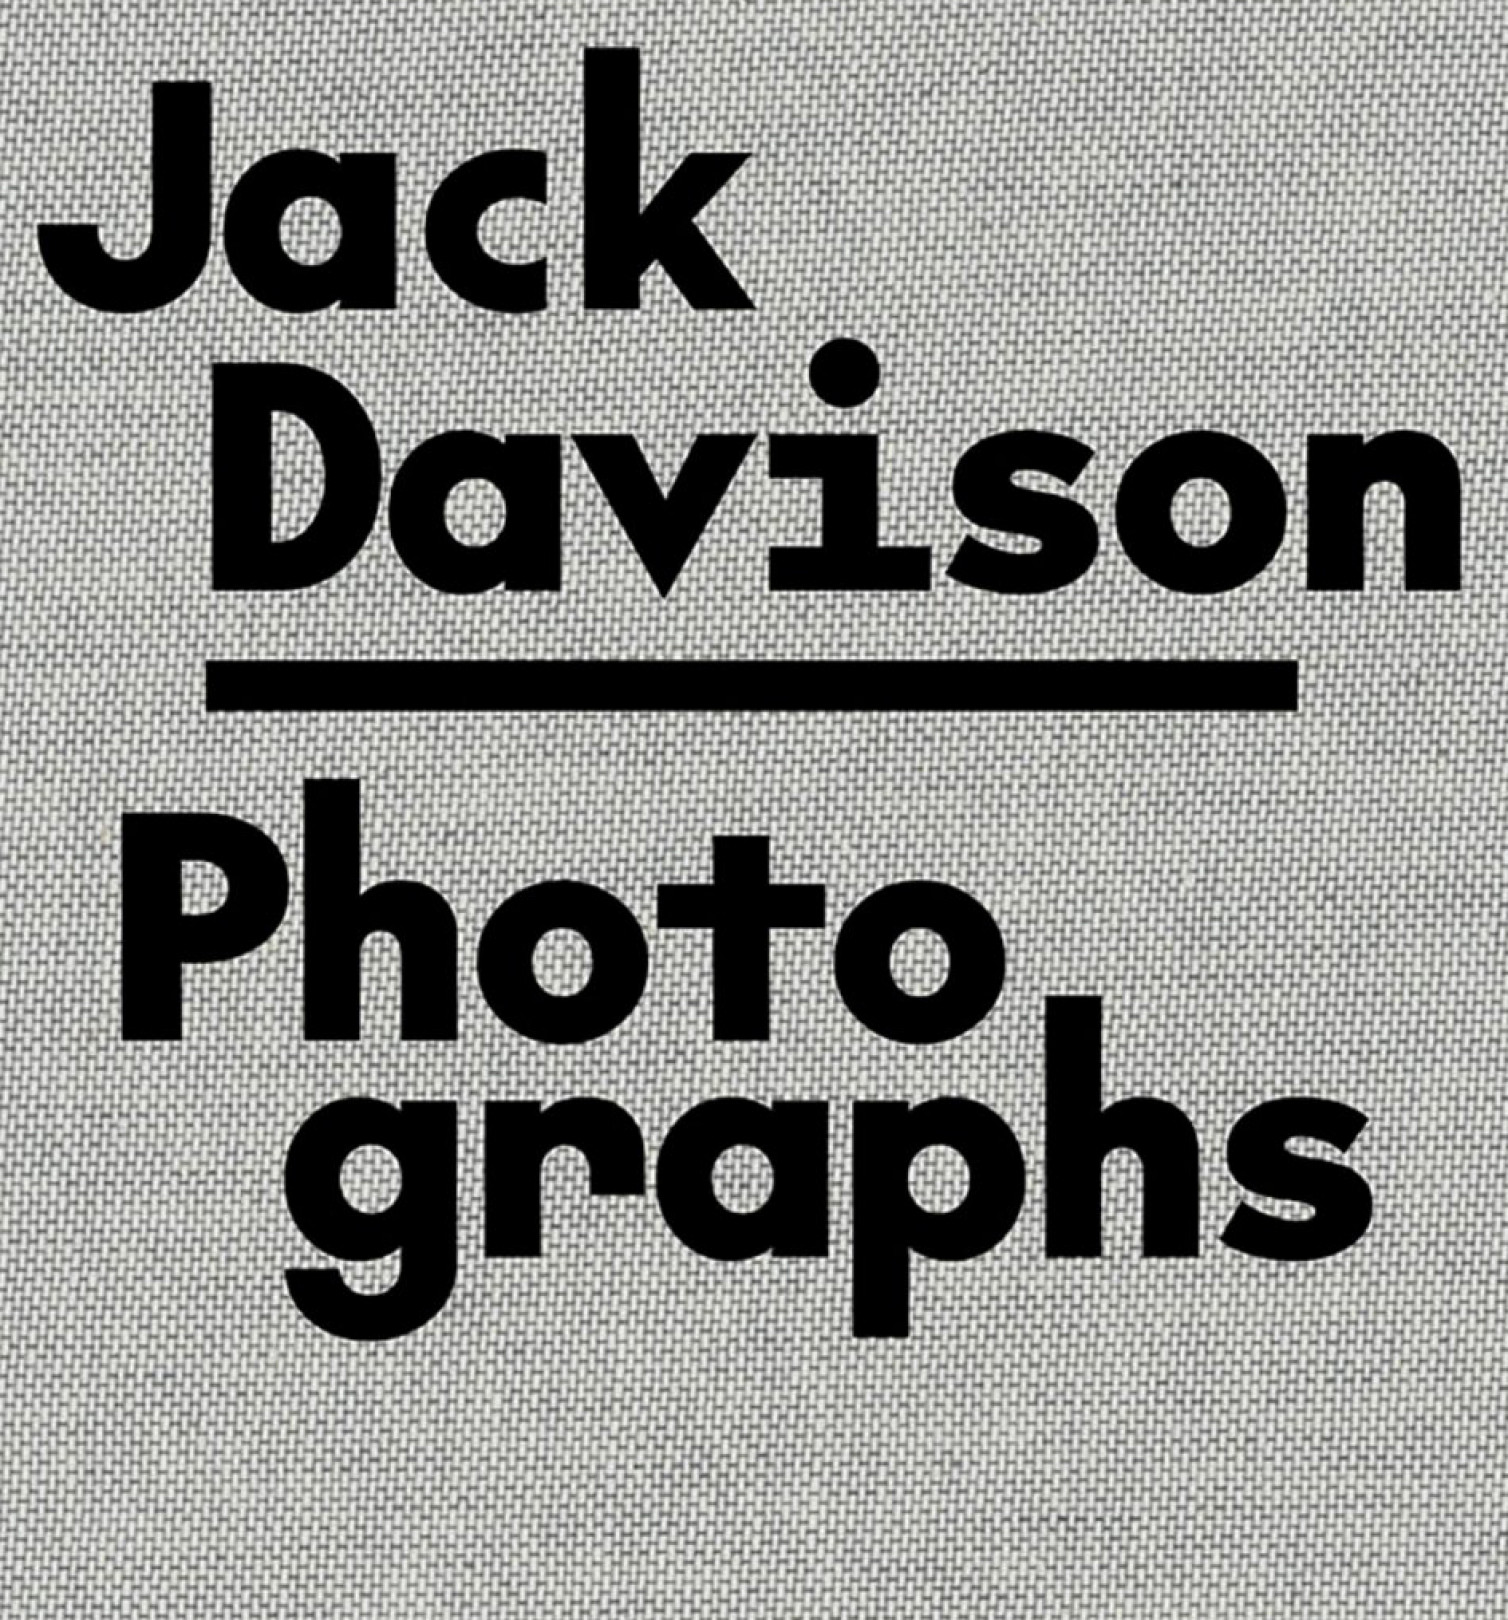 『Photographs』Jack Davison